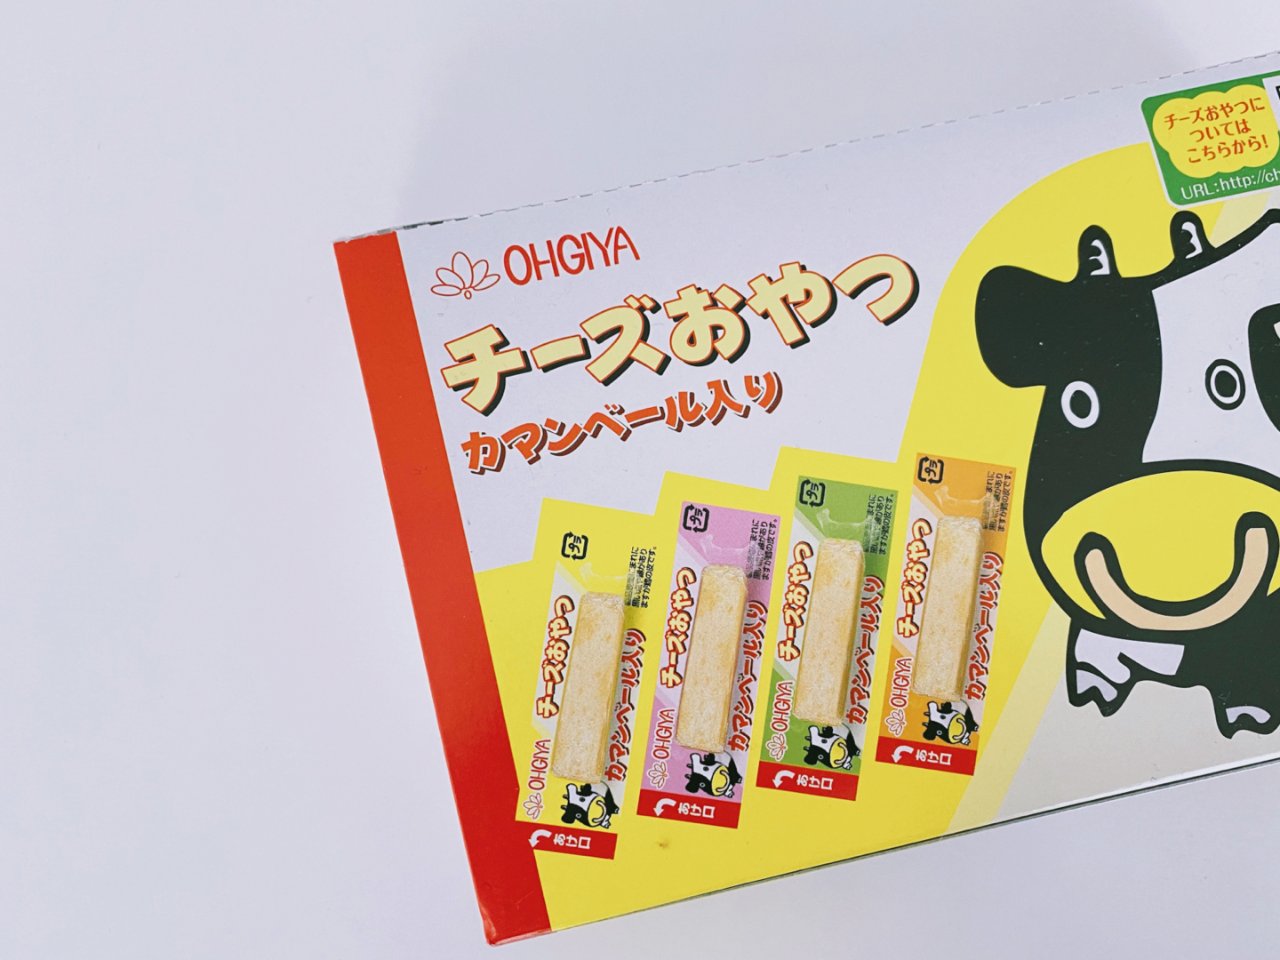 【补钙能量条】【小朋友超爱】日本OHGIYA扇屋 高钙芝士鳕鱼奶酪条 48枚入 整盒装 - 亚米网